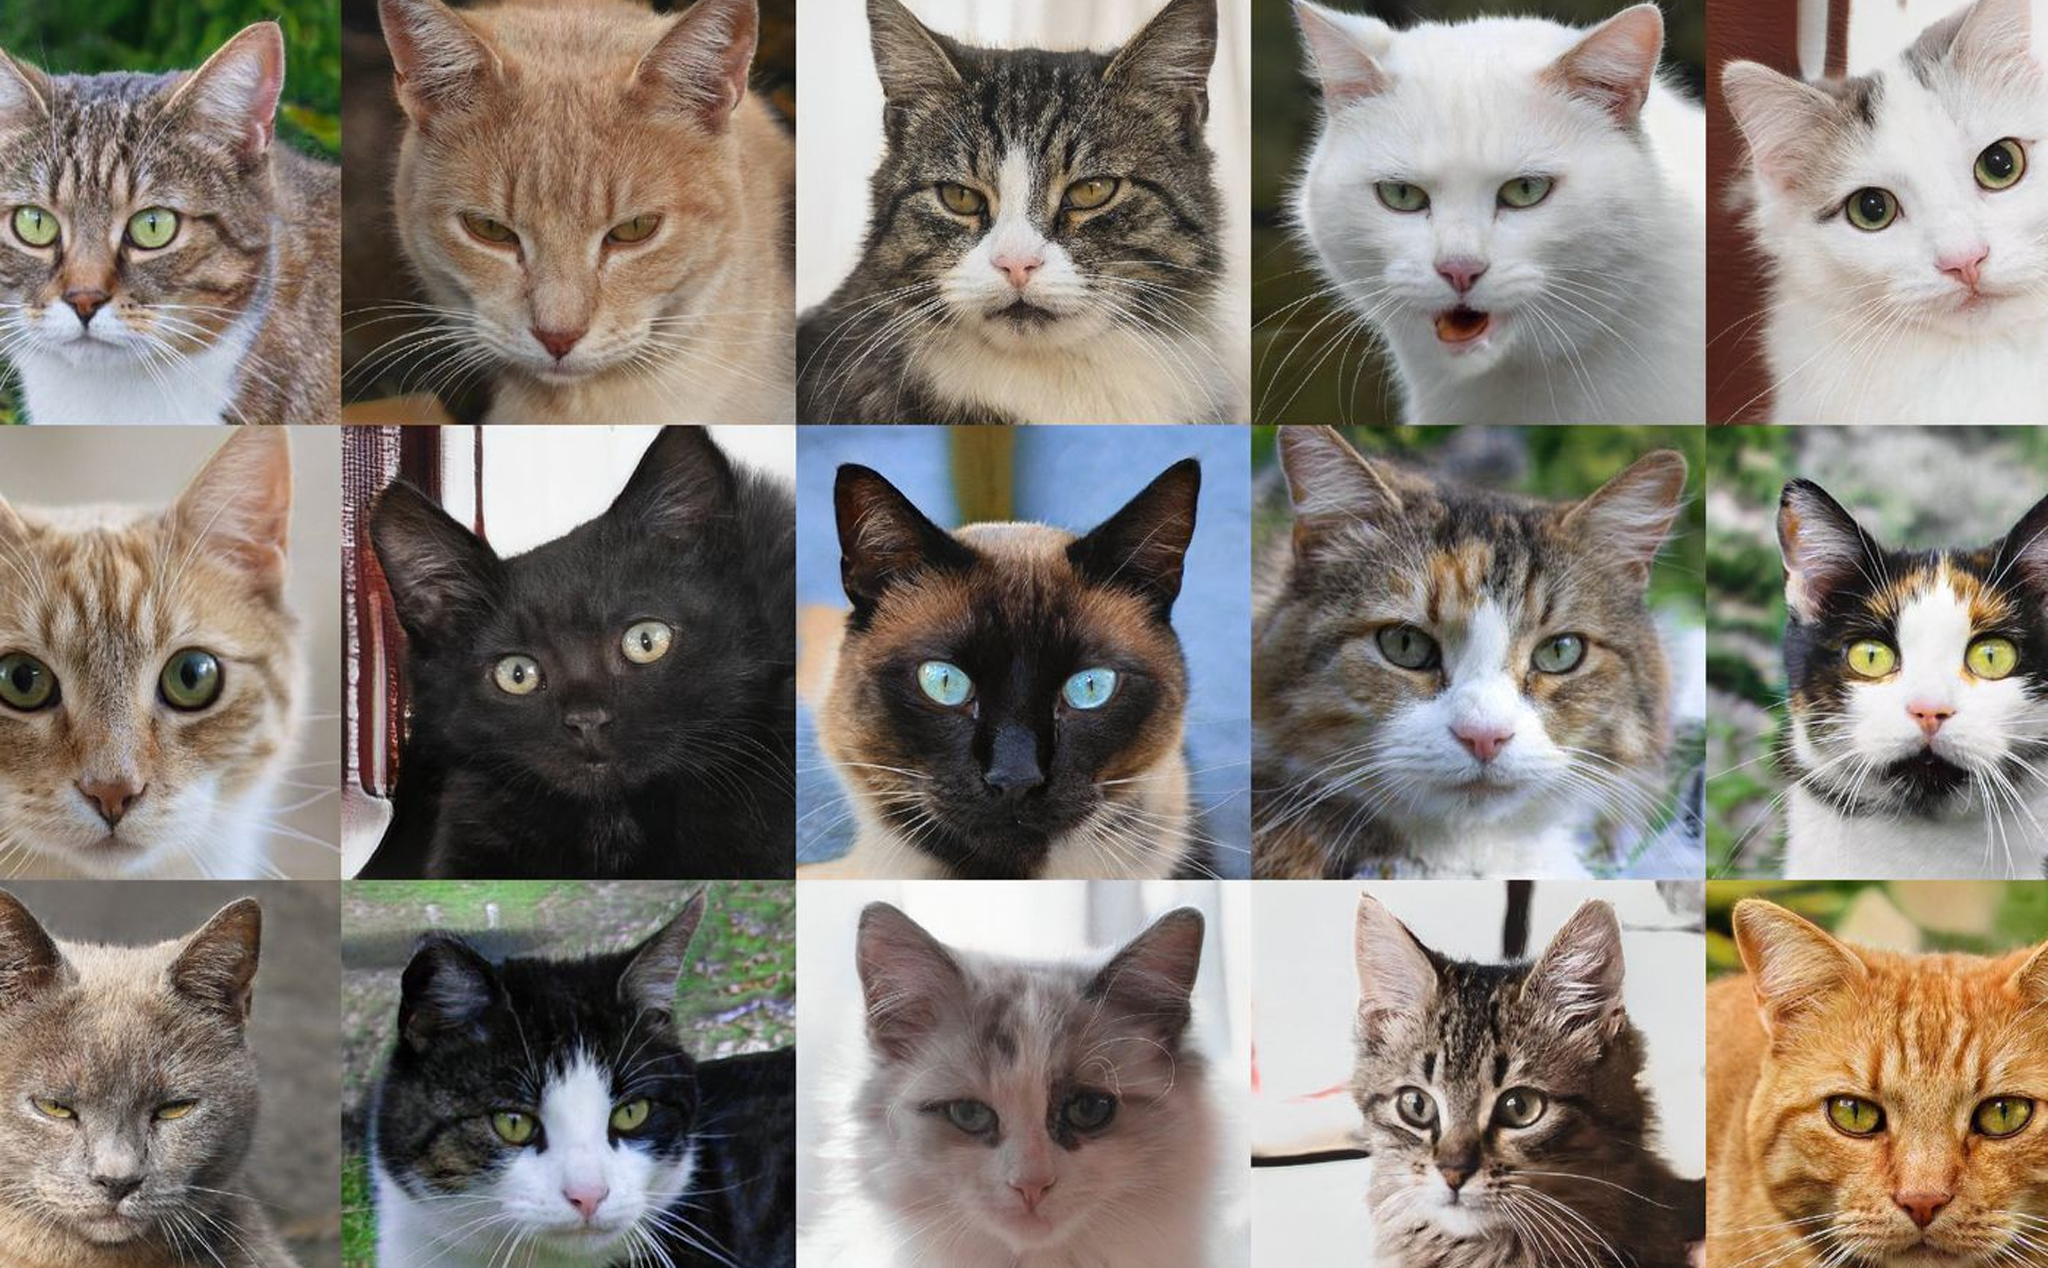 Hàng ngàn hình ảnh con mèo thật với nhiều hình thức khác nhau